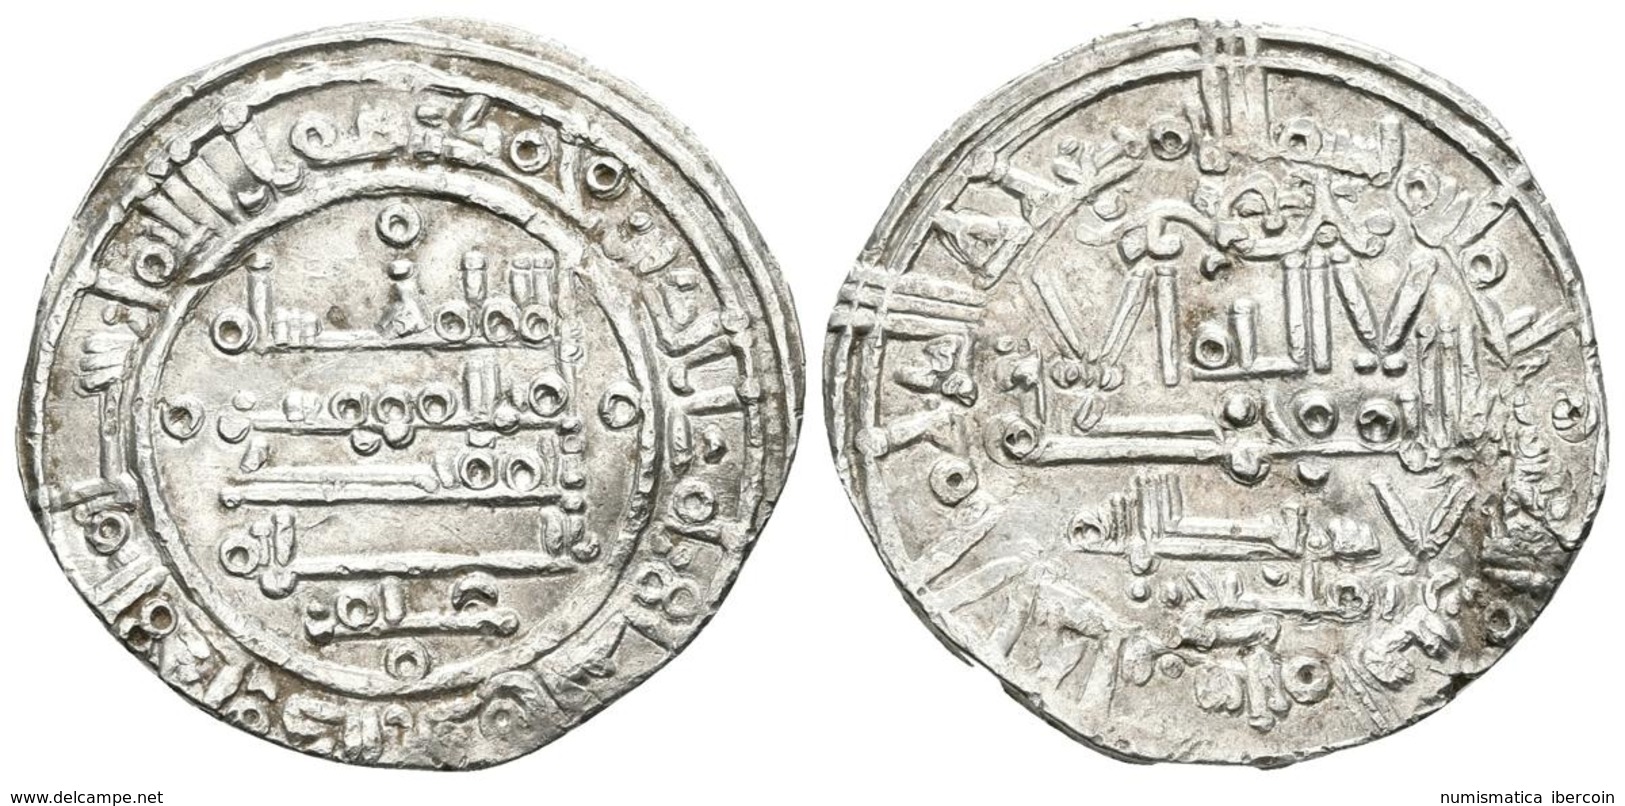 CALIFATO DE CORDOBA. Hisham II. Dirham. 392H. Al-Andalus. Citando Tamliy En La IA Y 'Amir En La IIA. V.573; Miles 322 Cc - Islamic